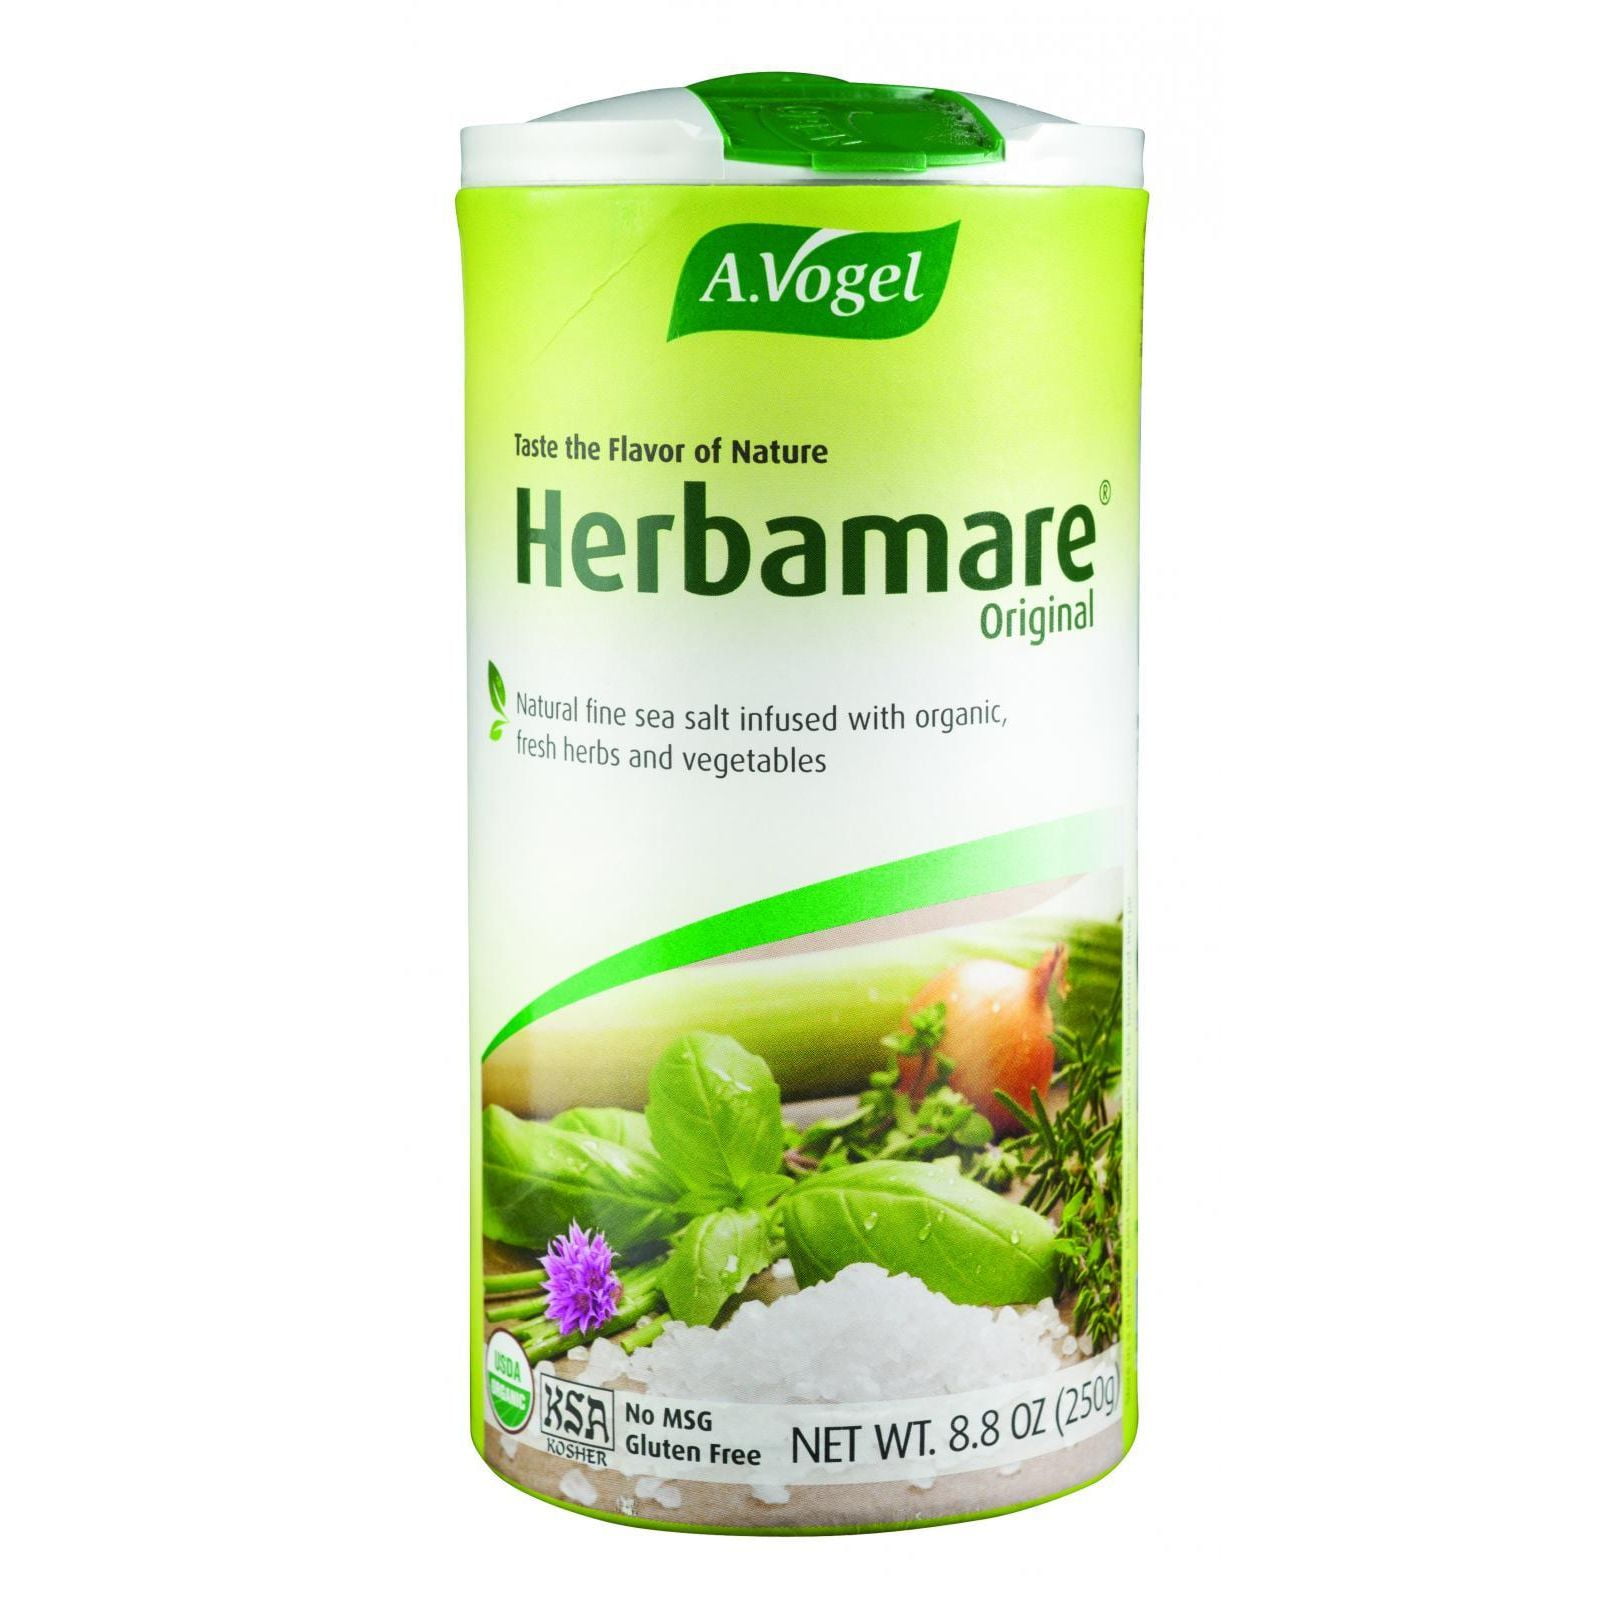 Organic Original Herbamare 125g (A.Vogel)